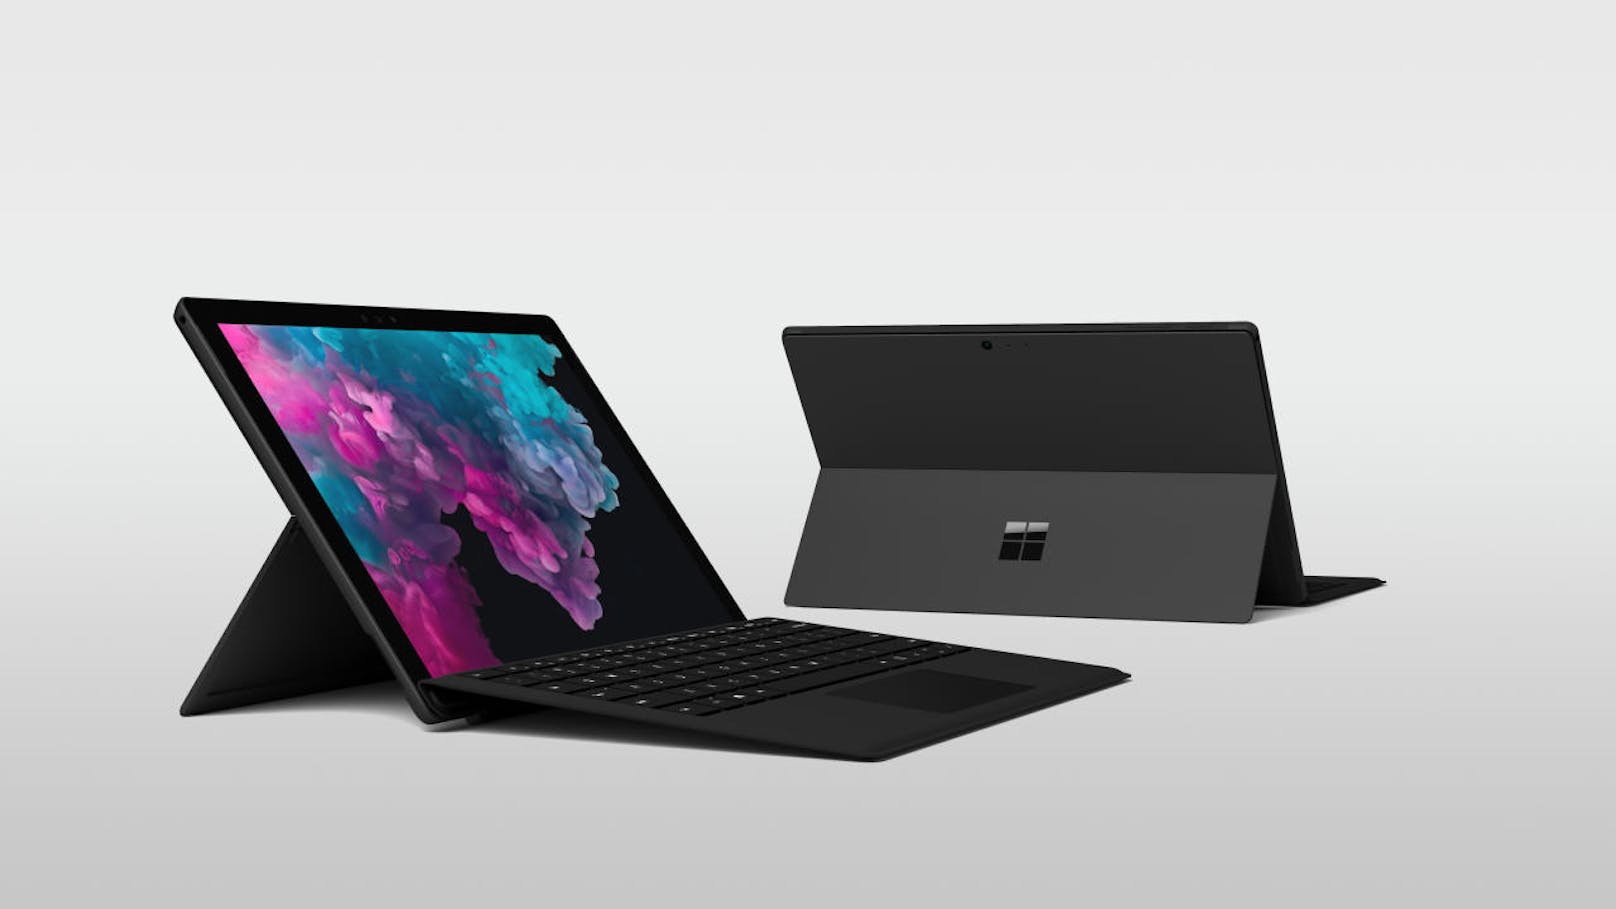 Das Surface Pro gibt es neu auch in mattschwarz und es wurde mit einem Intel Quad Core Prozessor der achten Generation schneller gemacht. Die Akkulaufzeit soll bis zu 13,5 Stunden betragen.